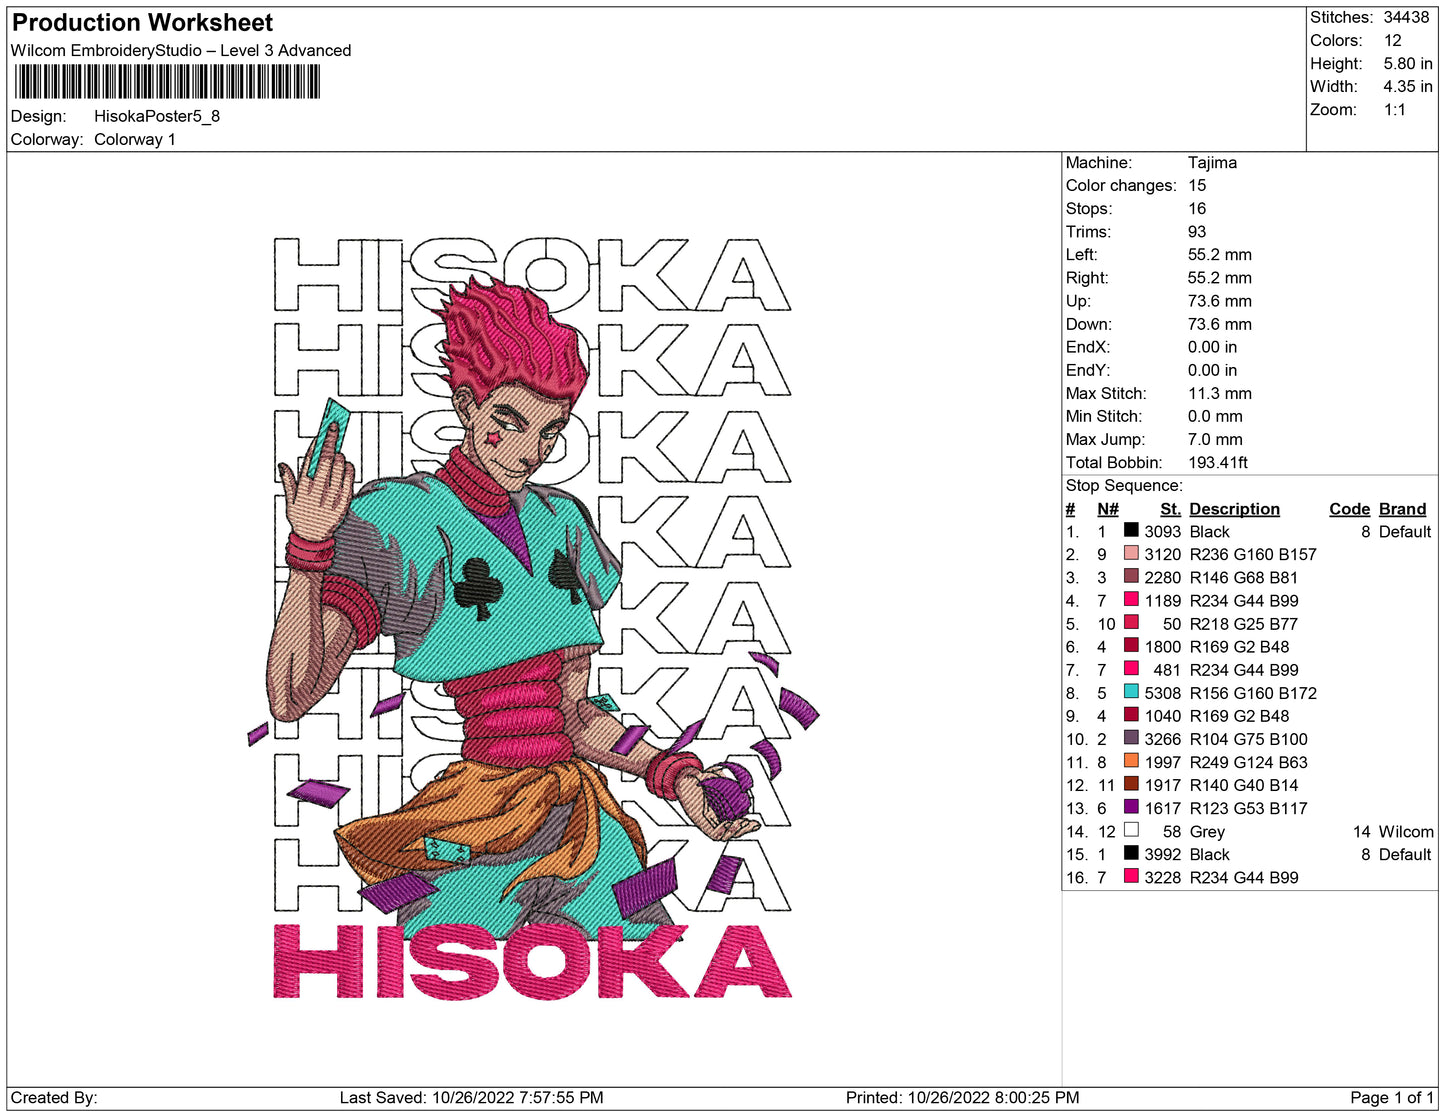 Hisoka-Plakat